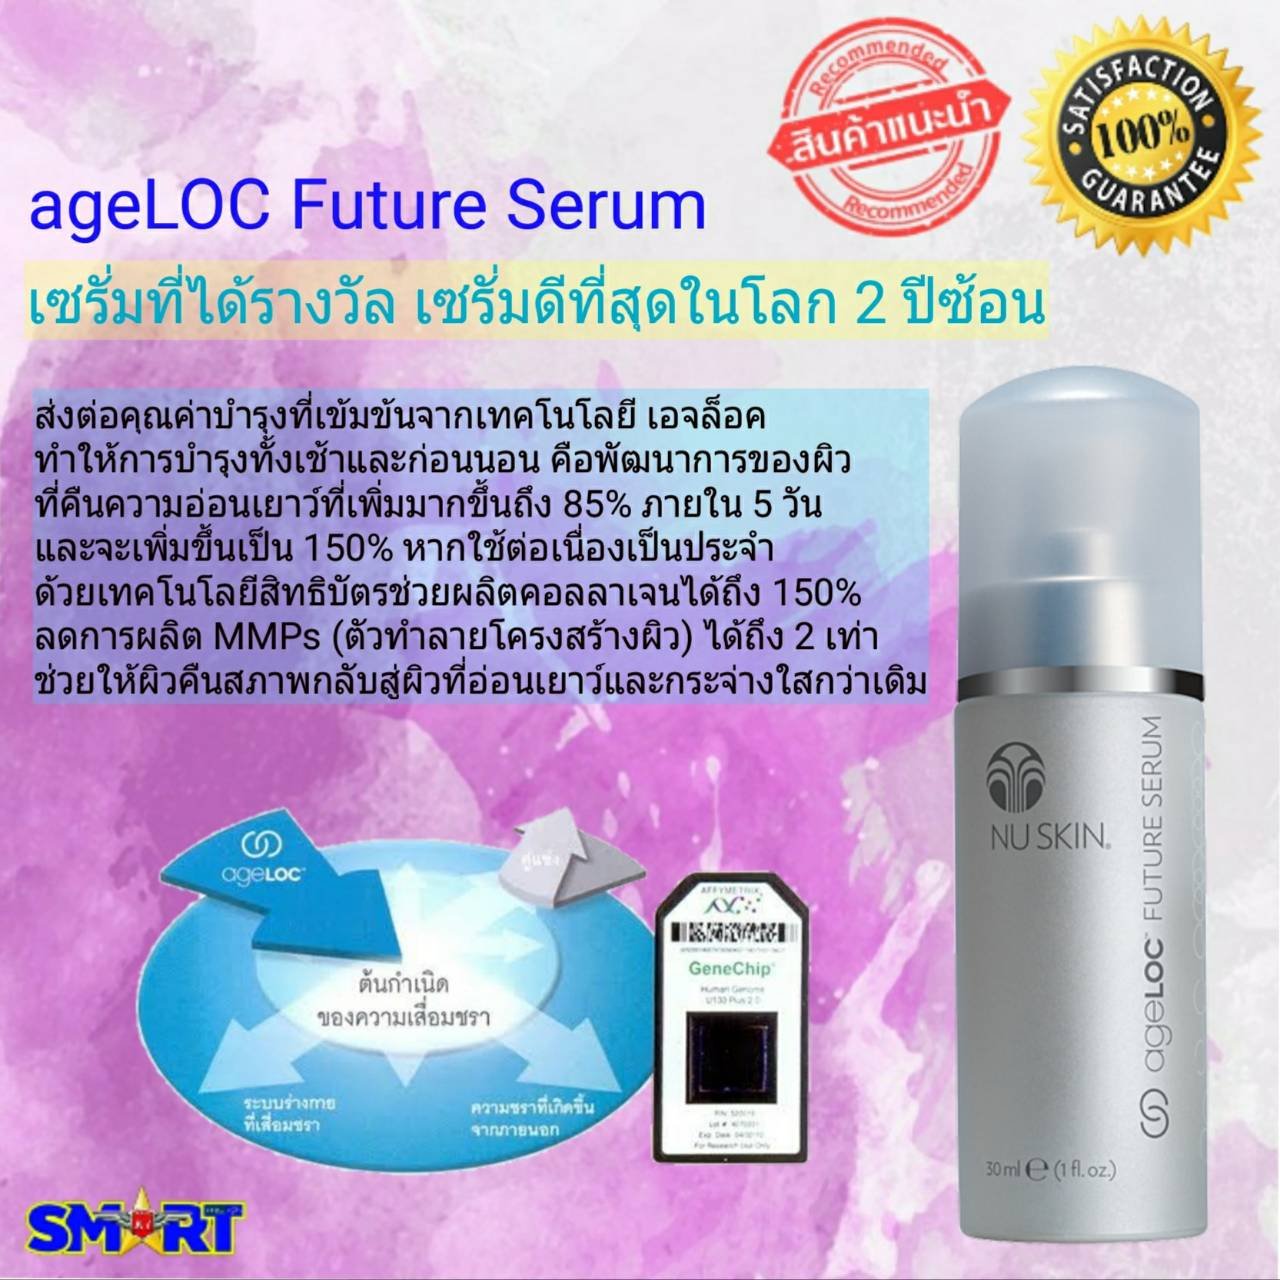 ageLOC Future Serum